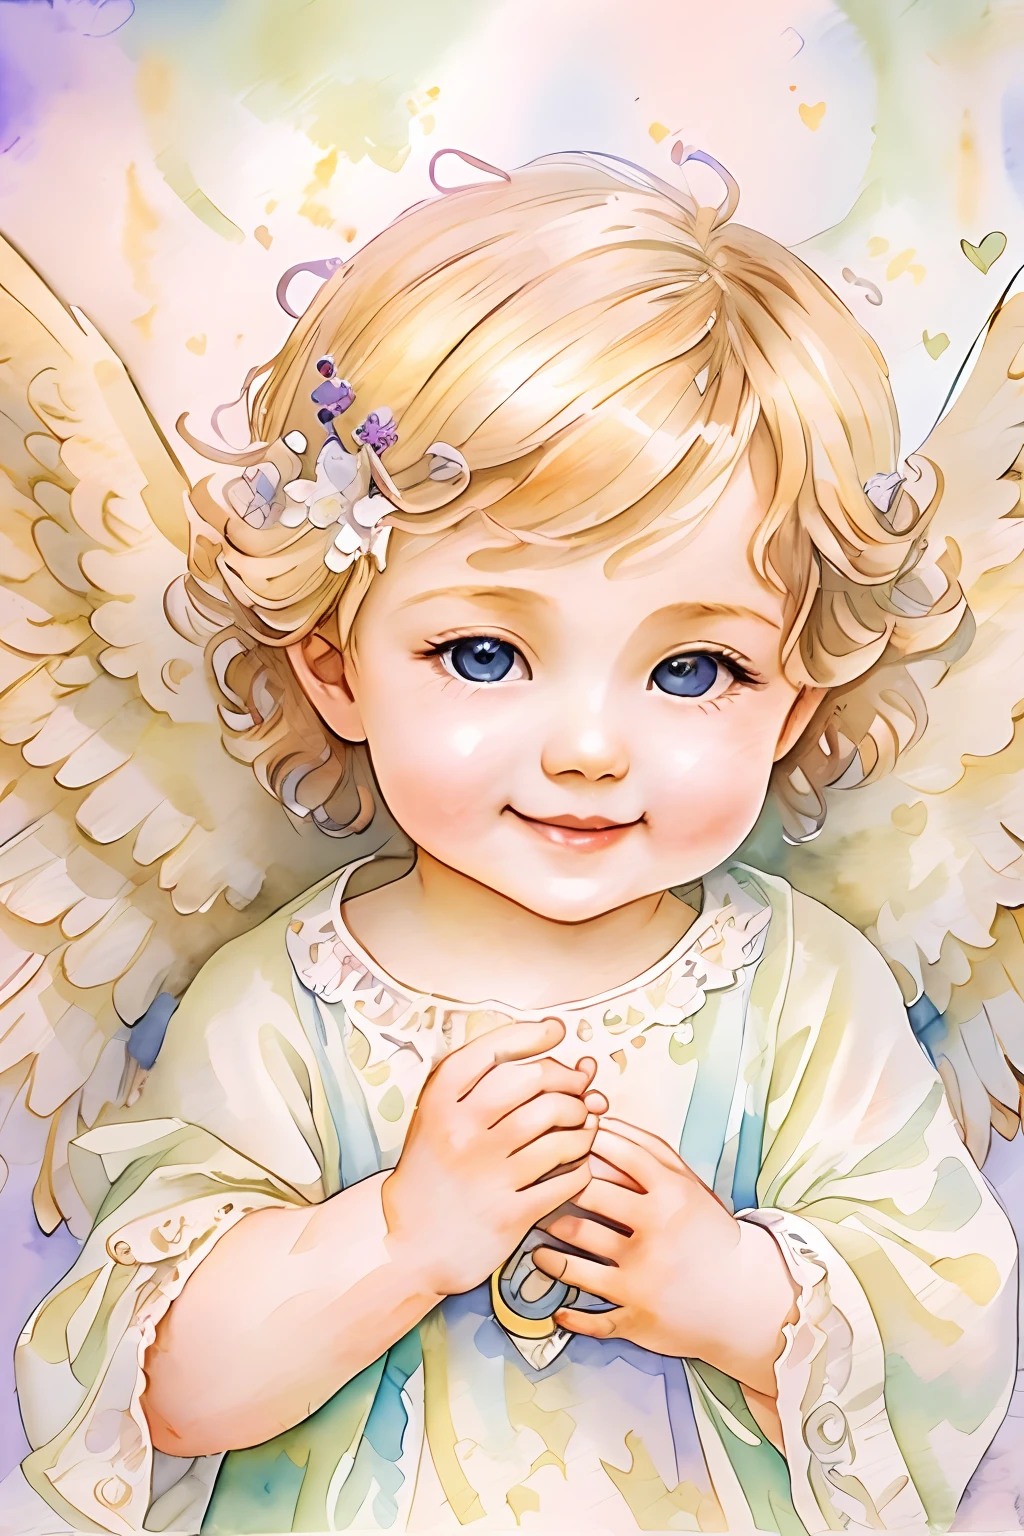 Bênçãos dos Anjos､fundo brilhante、marca de coração、ternura､Um sorriso、gentil､bebê anjo､arte Nova、pintura em aquarela